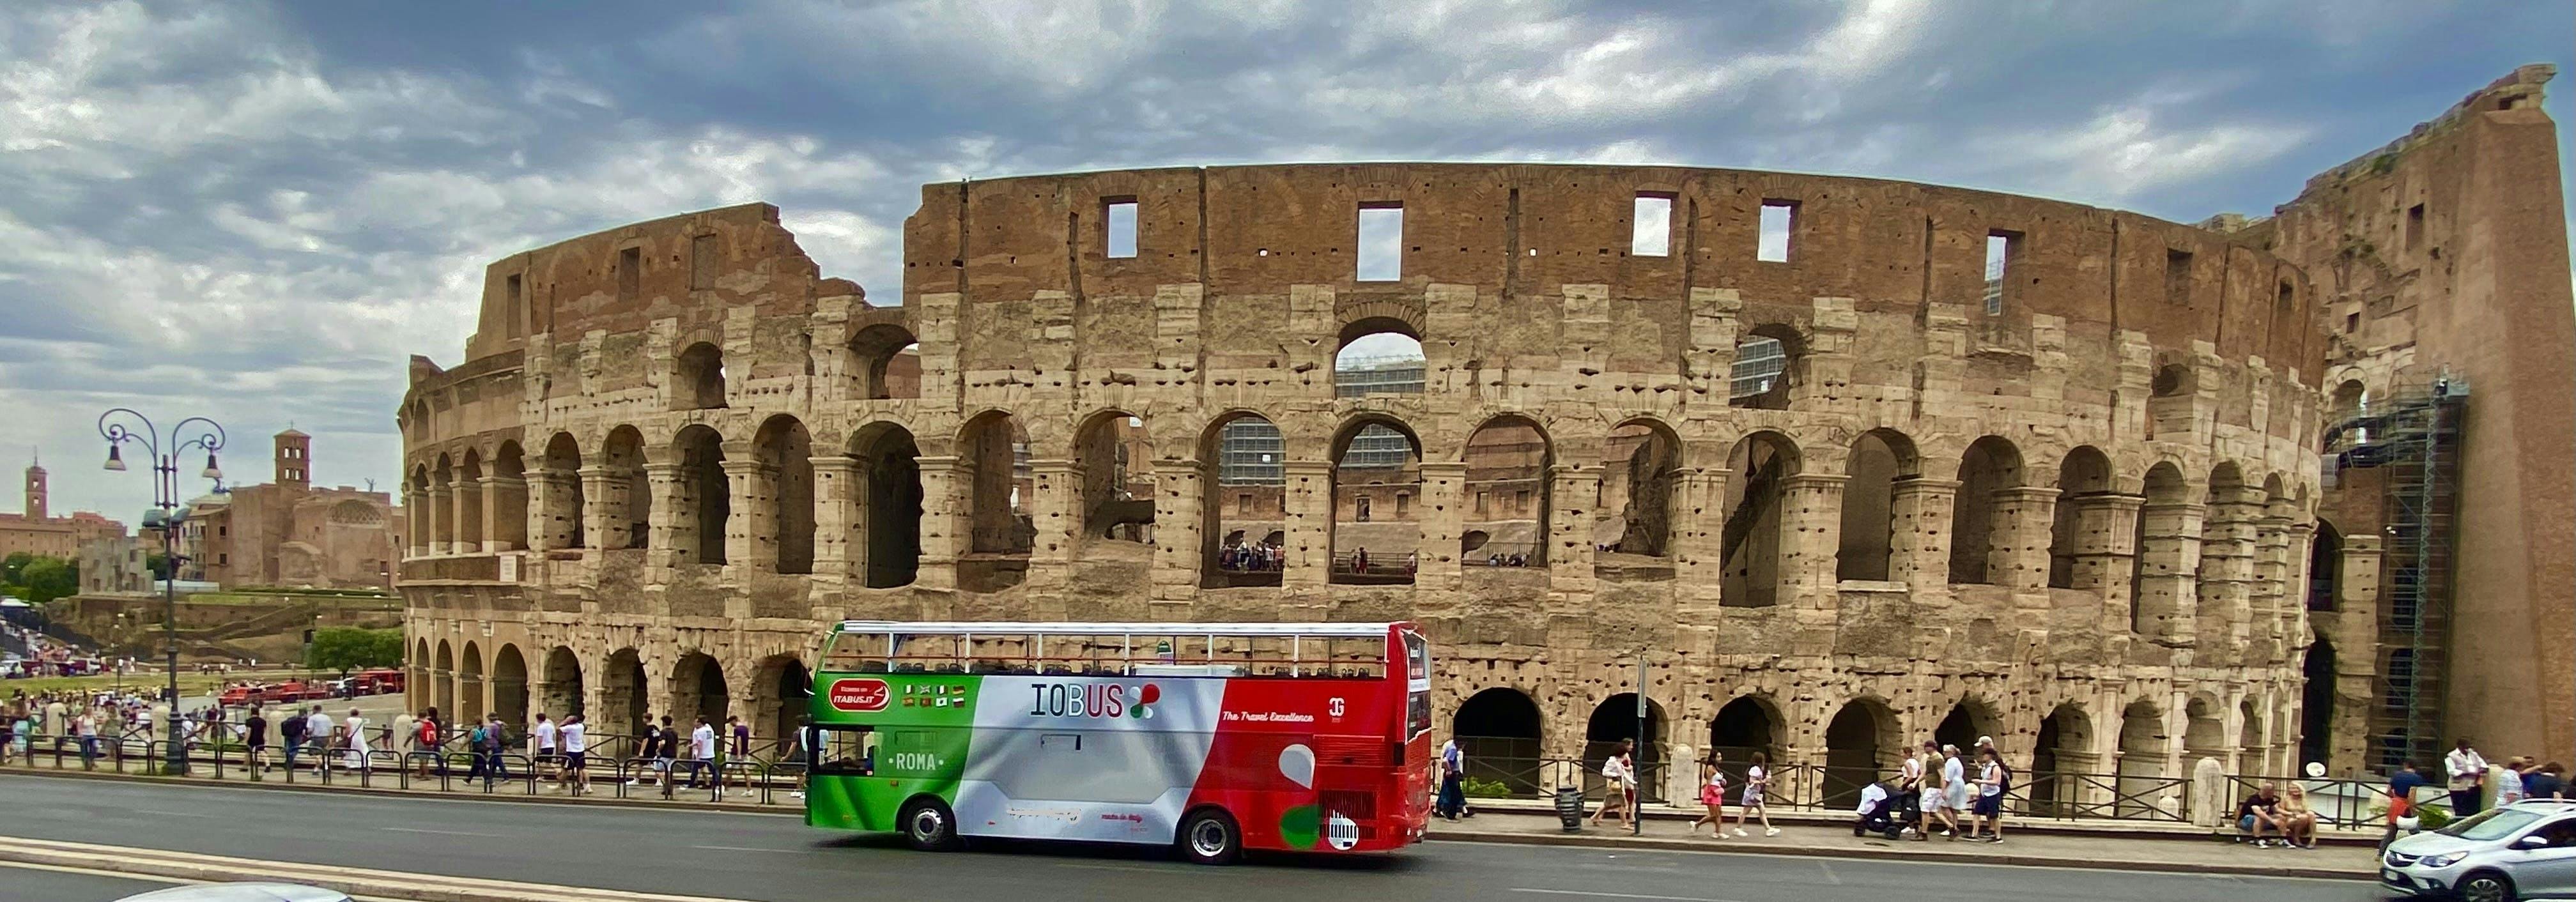 Excursão IOBUS hop-on-hop-off em Roma